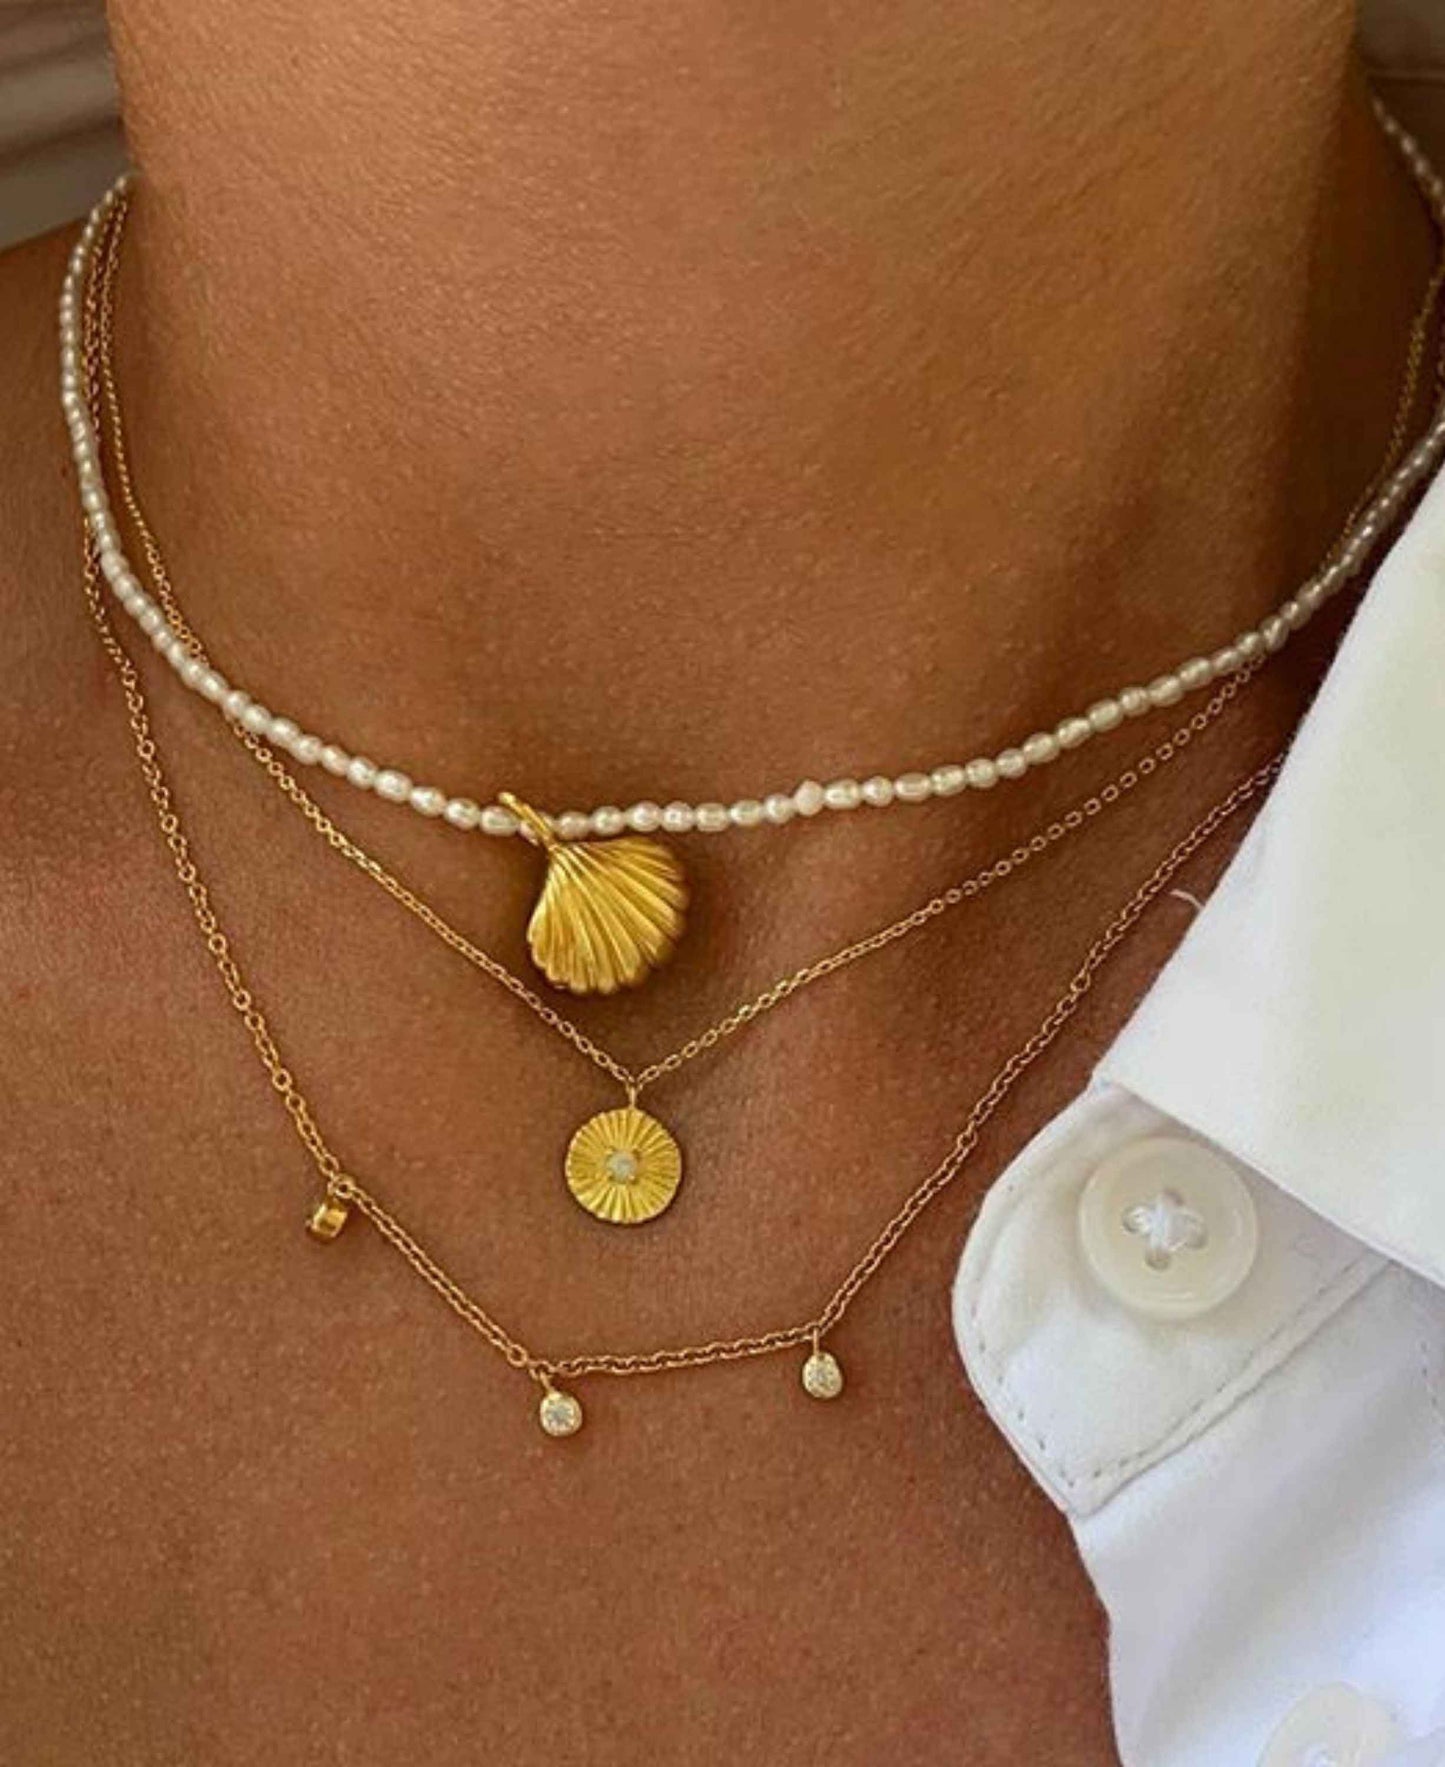 Makara necklace